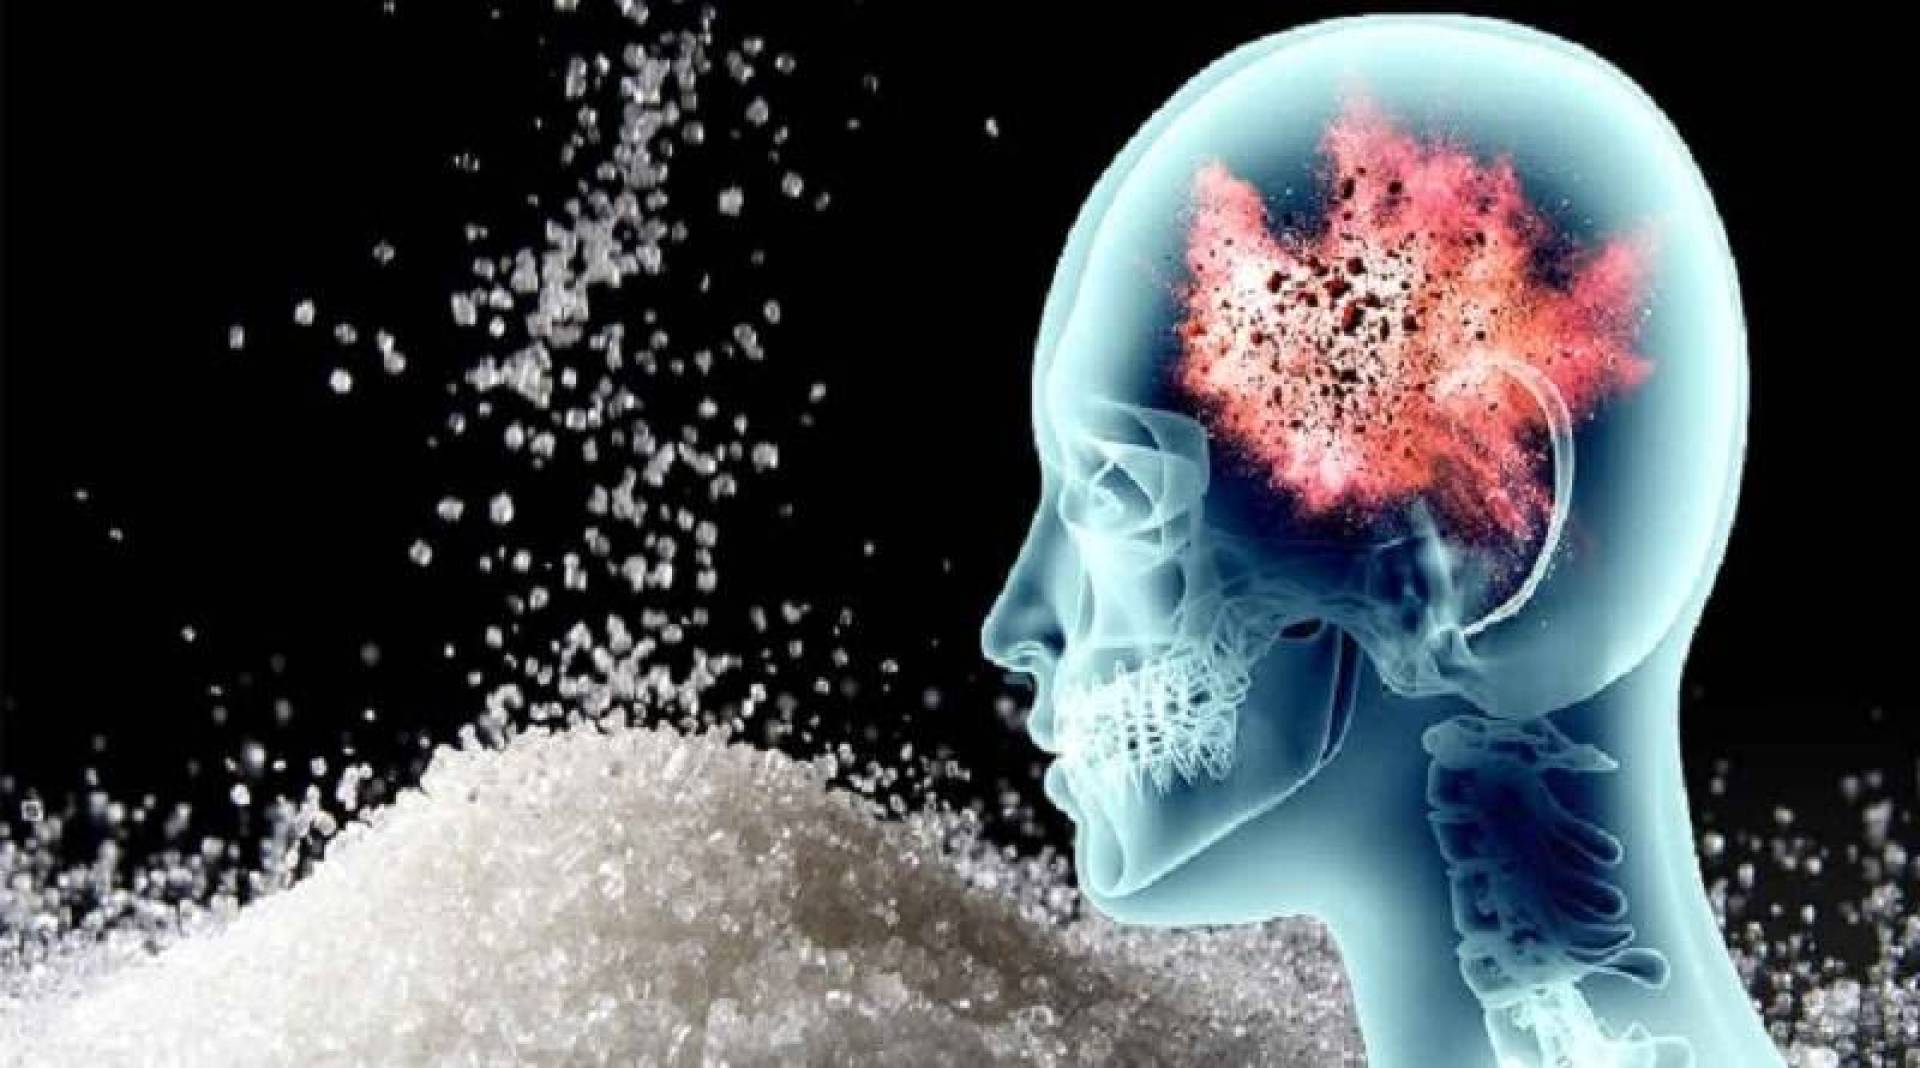 سكري الدماغ يكشف عن علاقة وثيقة بين السكري والزهايمر